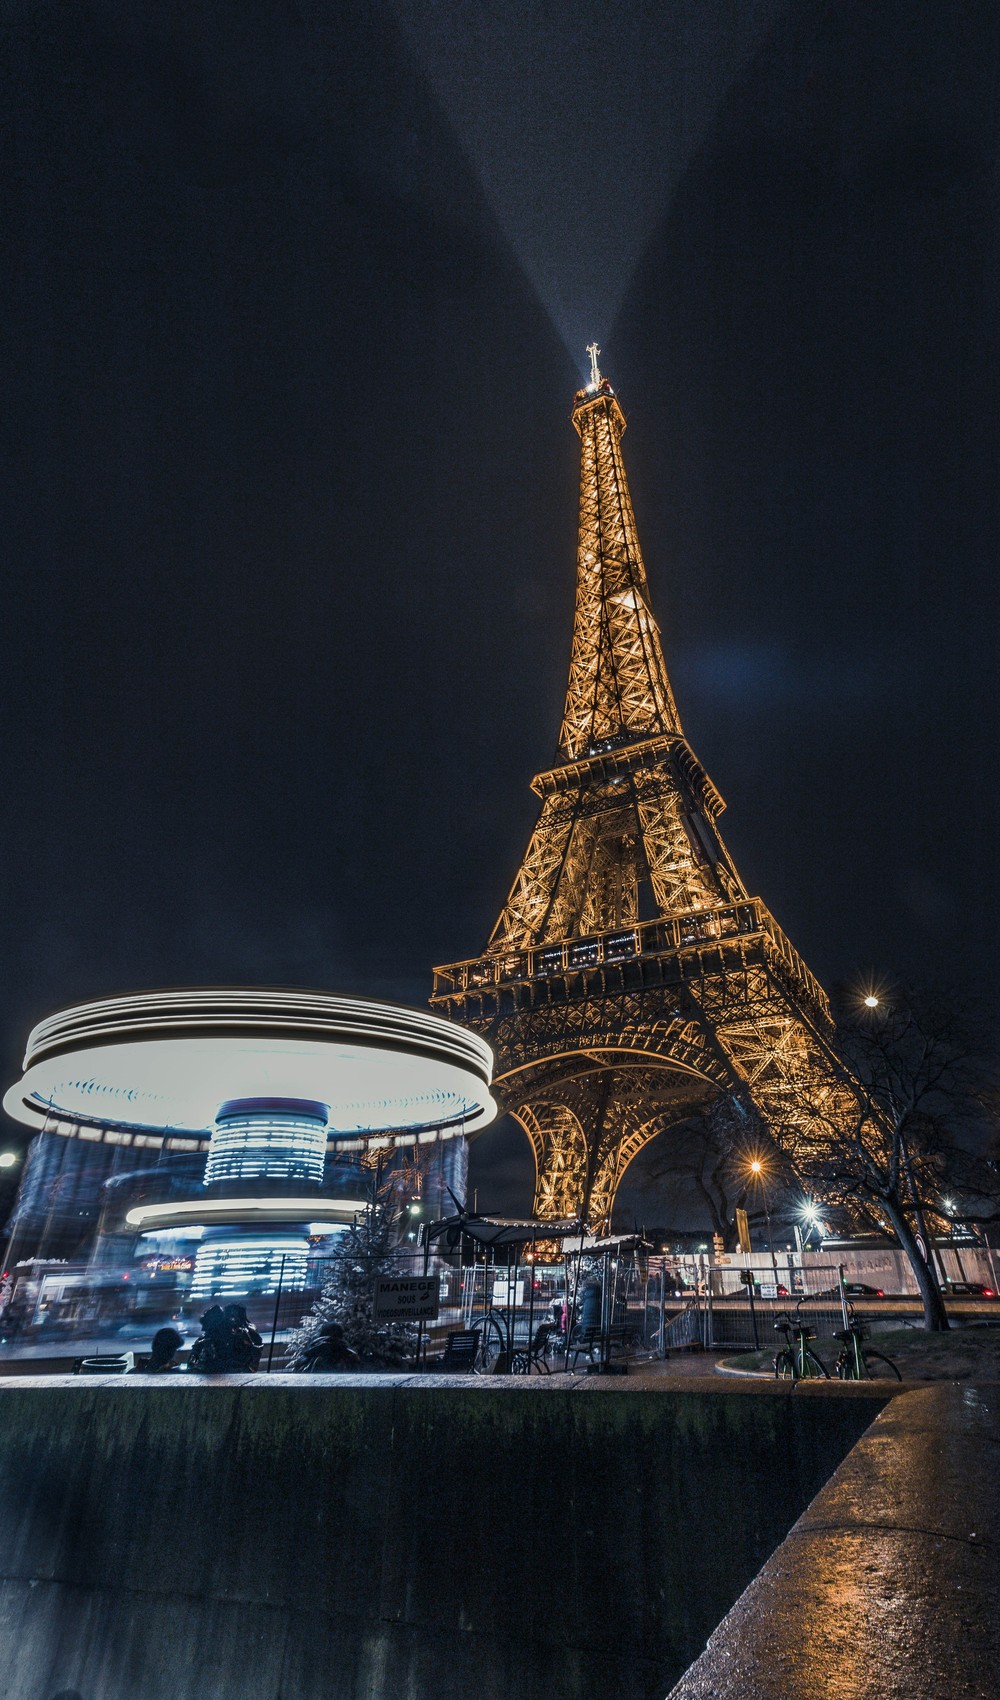 Chụp hình tháp Eiffel vào buổi tối có thể khiến bạn... bị kiện ra toà, và đây là lí do! - Ảnh 3.